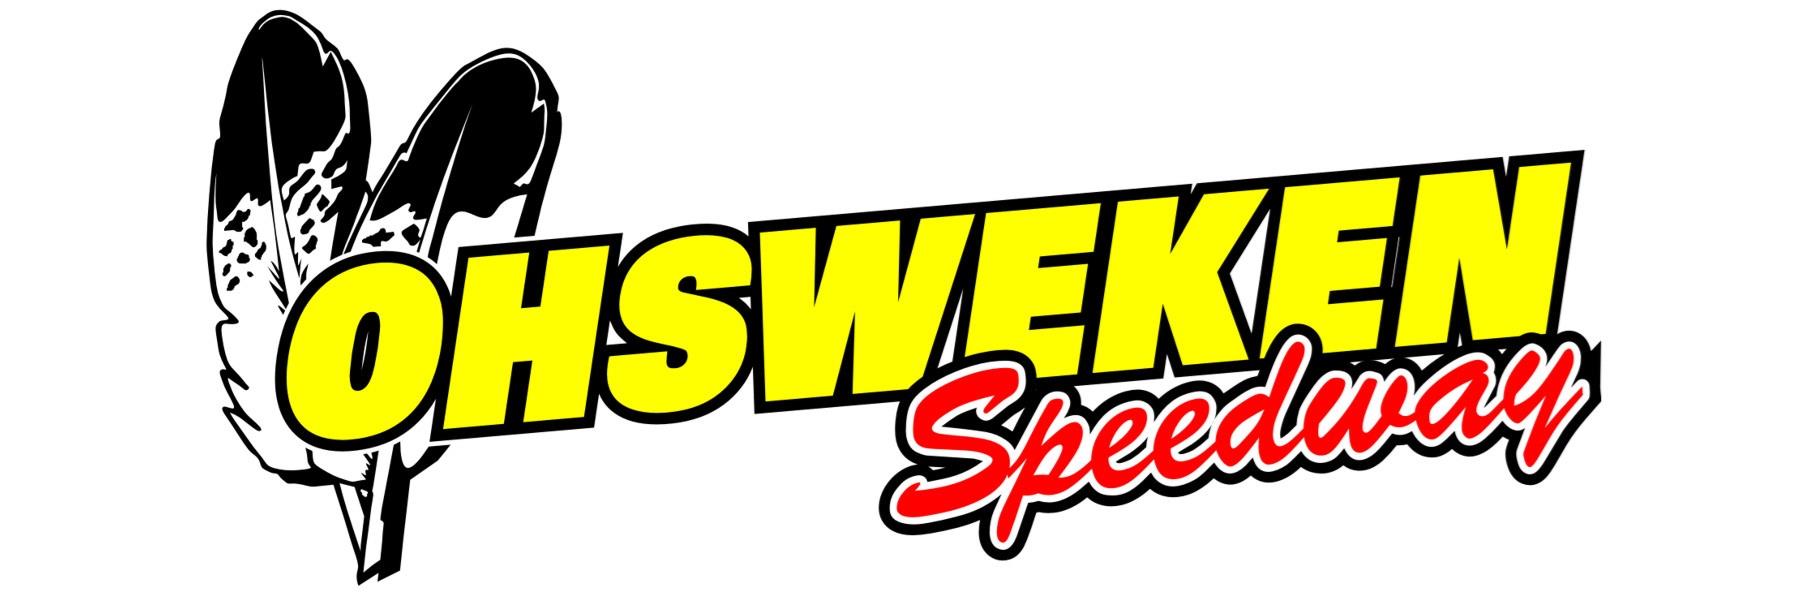 8/2/2019 - Ohsweken Speedway